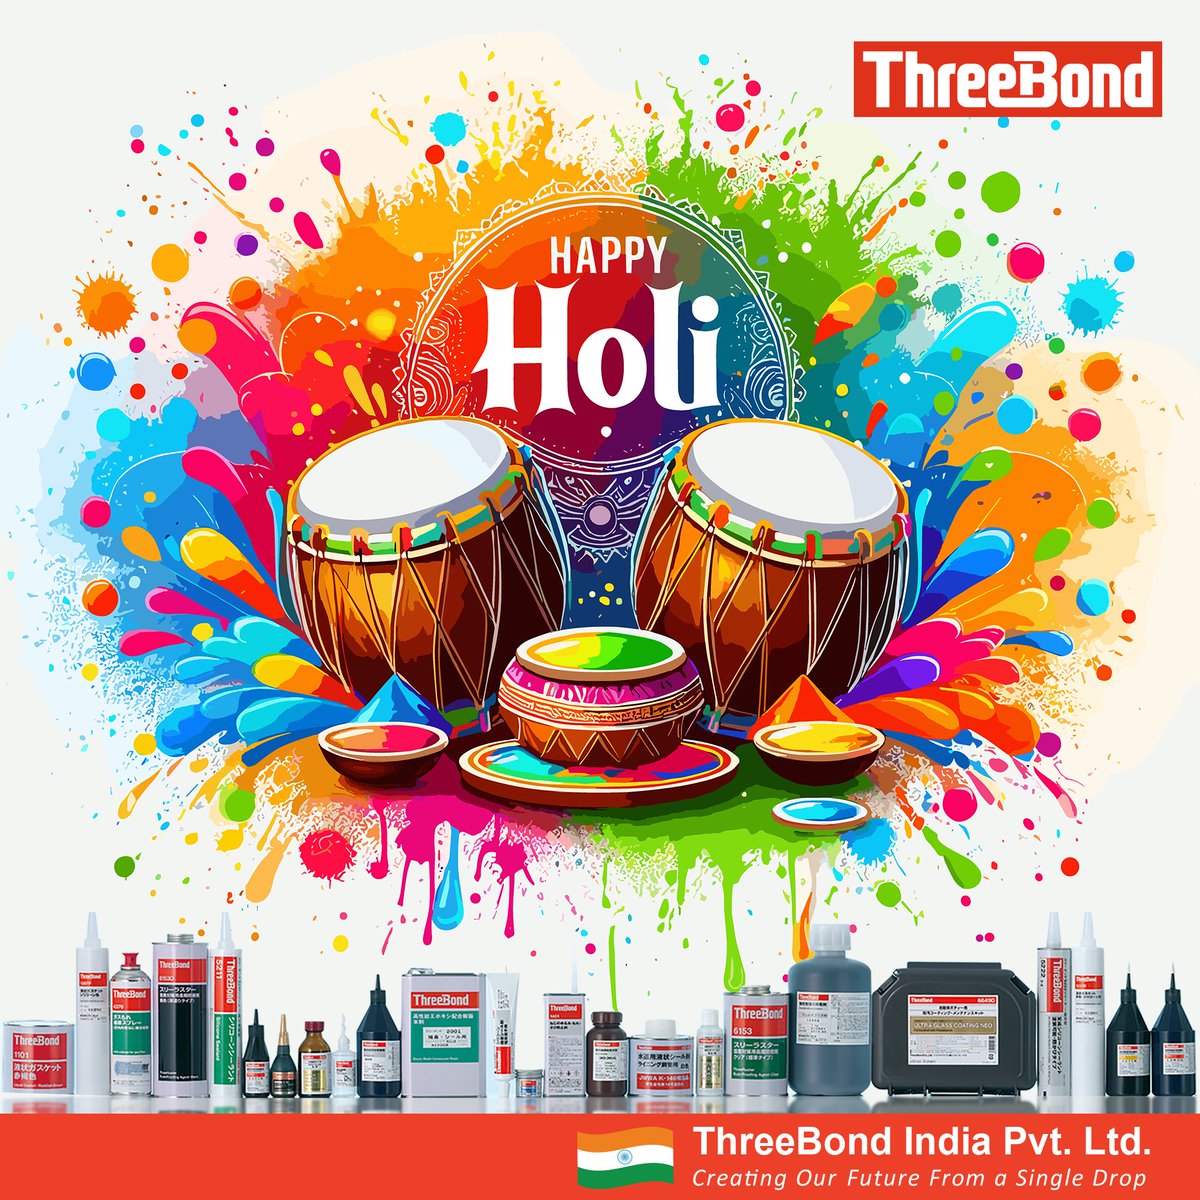 Colors of joy, laughter, and togetherness - celebrating the vibrant hues of Holi!
.
.
#HappyHoli #JoyfulMoments #FestiveSpirit